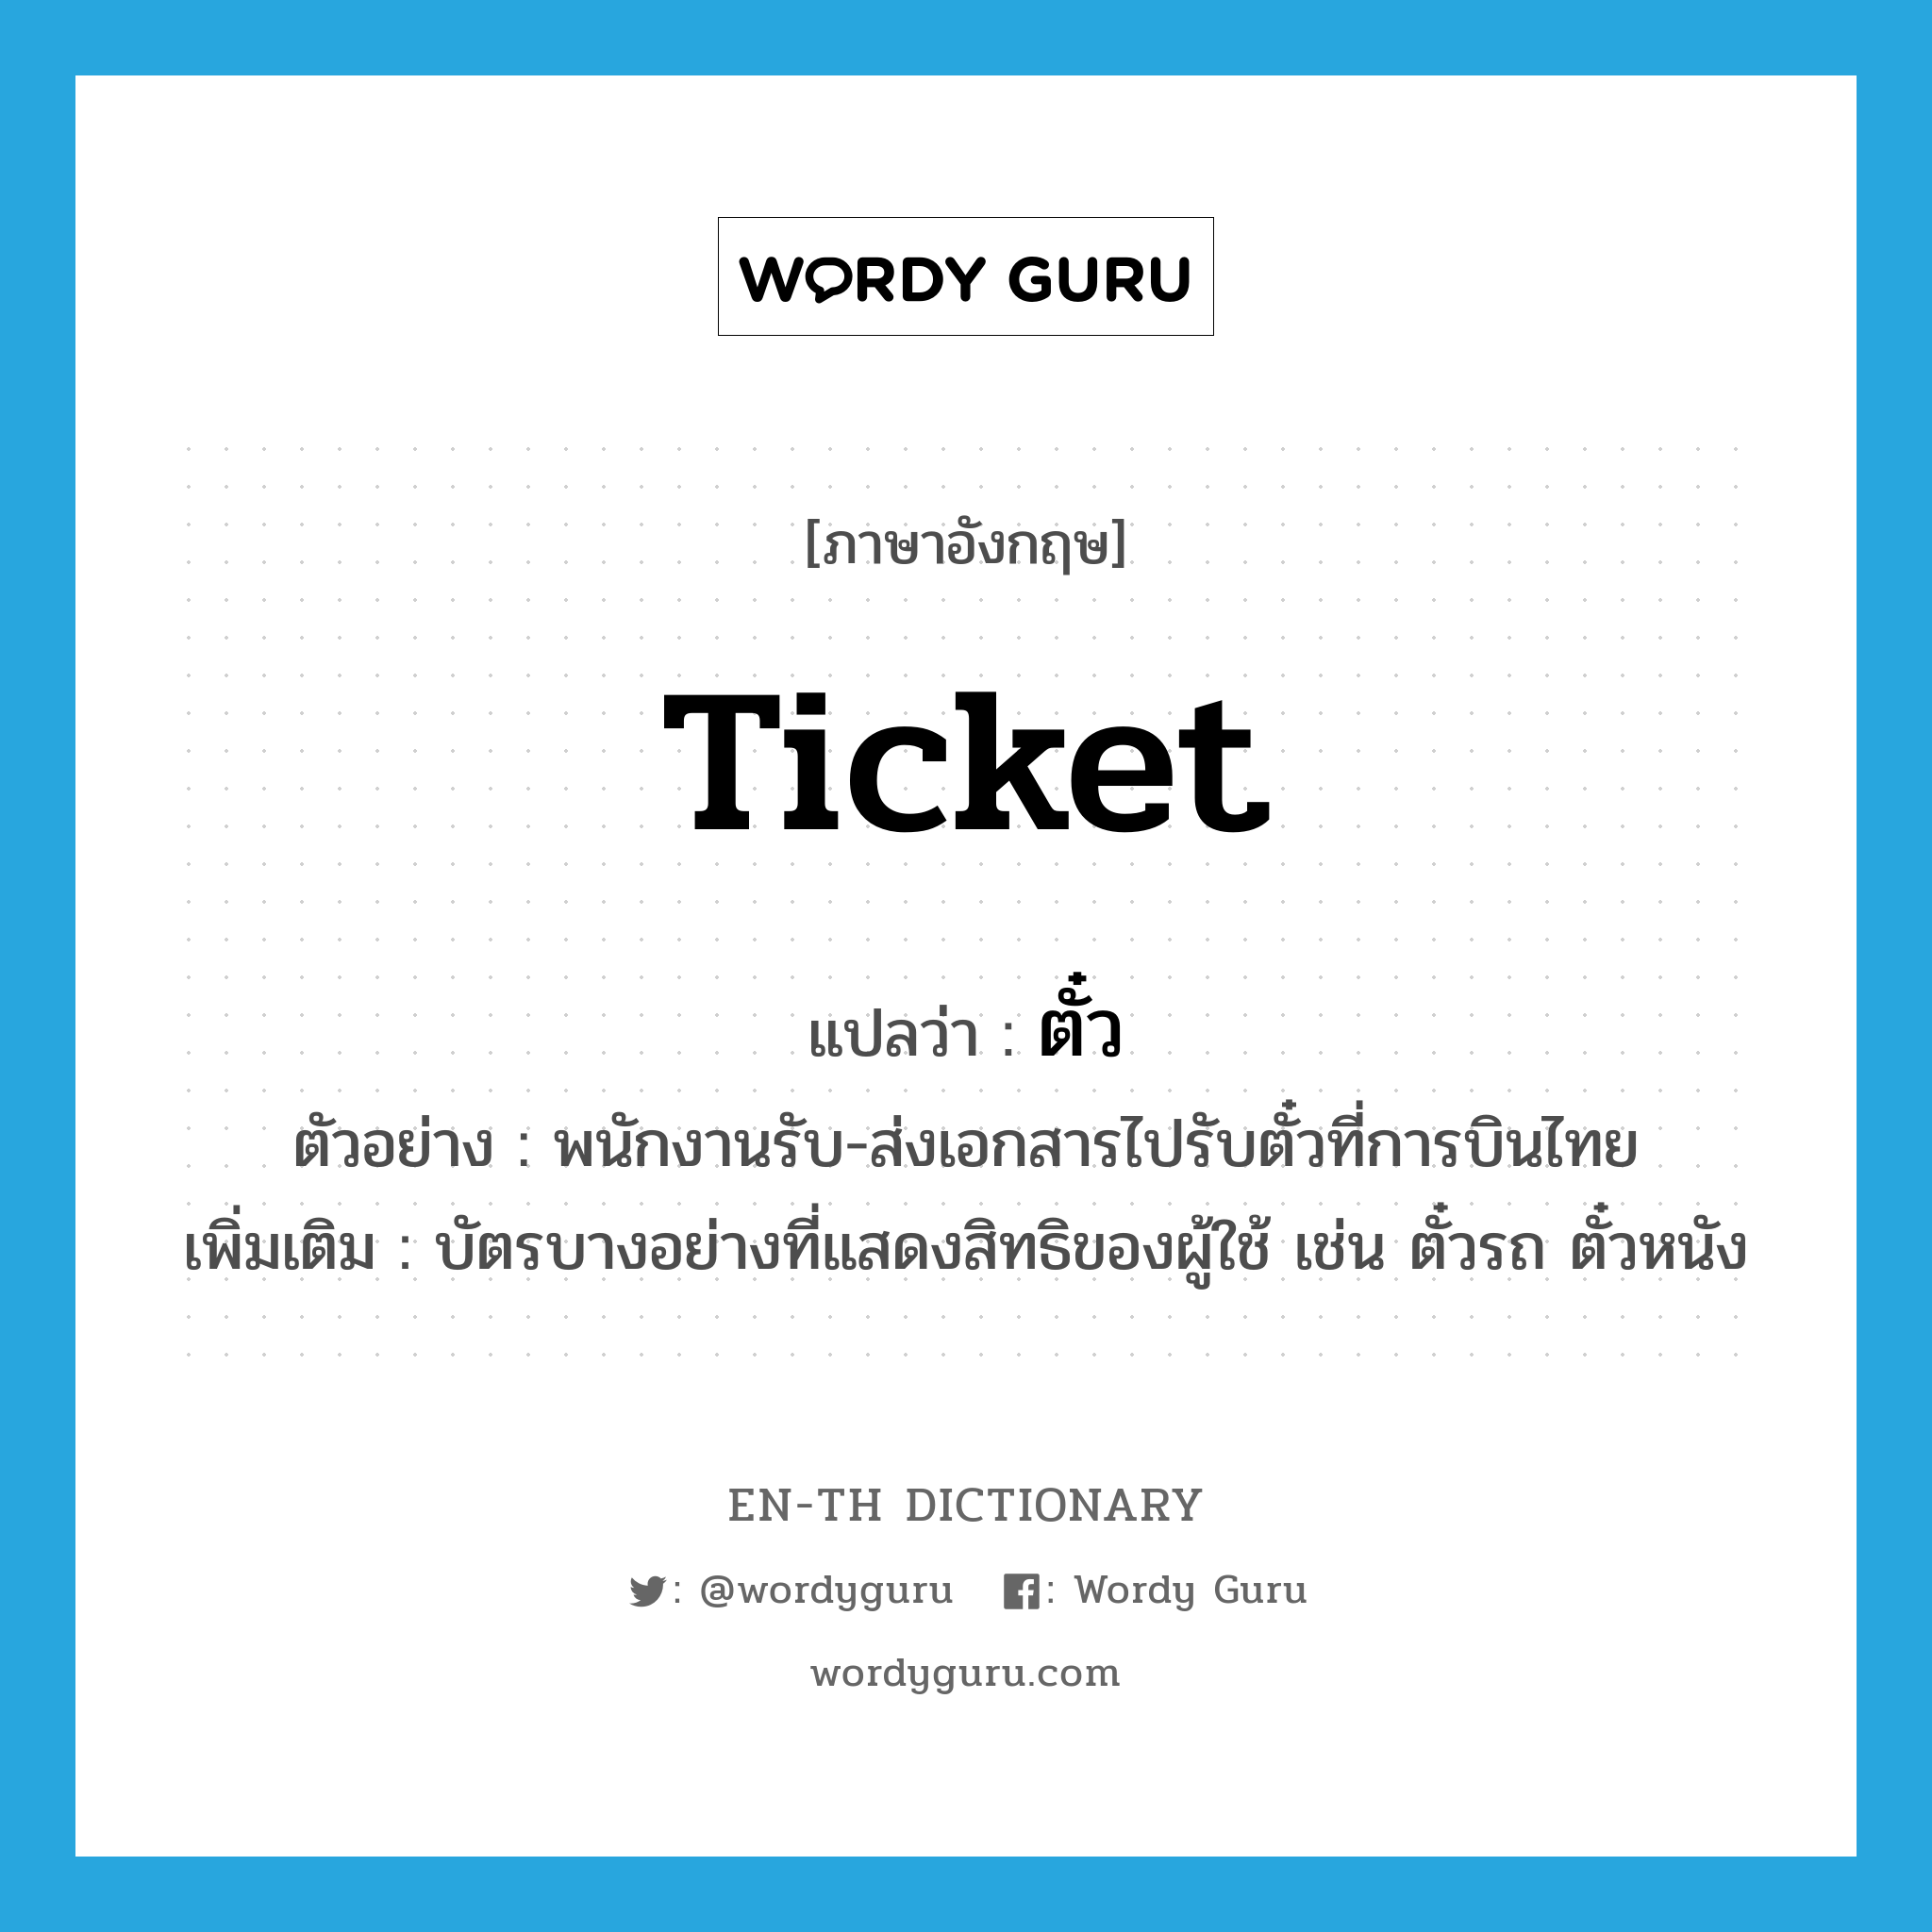 ticket แปลว่า?, คำศัพท์ภาษาอังกฤษ ticket แปลว่า ตั๋ว ประเภท N ตัวอย่าง พนักงานรับ-ส่งเอกสารไปรับตั๋วที่การบินไทย เพิ่มเติม บัตรบางอย่างที่แสดงสิทธิของผู้ใช้ เช่น ตั๋วรถ ตั๋วหนัง หมวด N